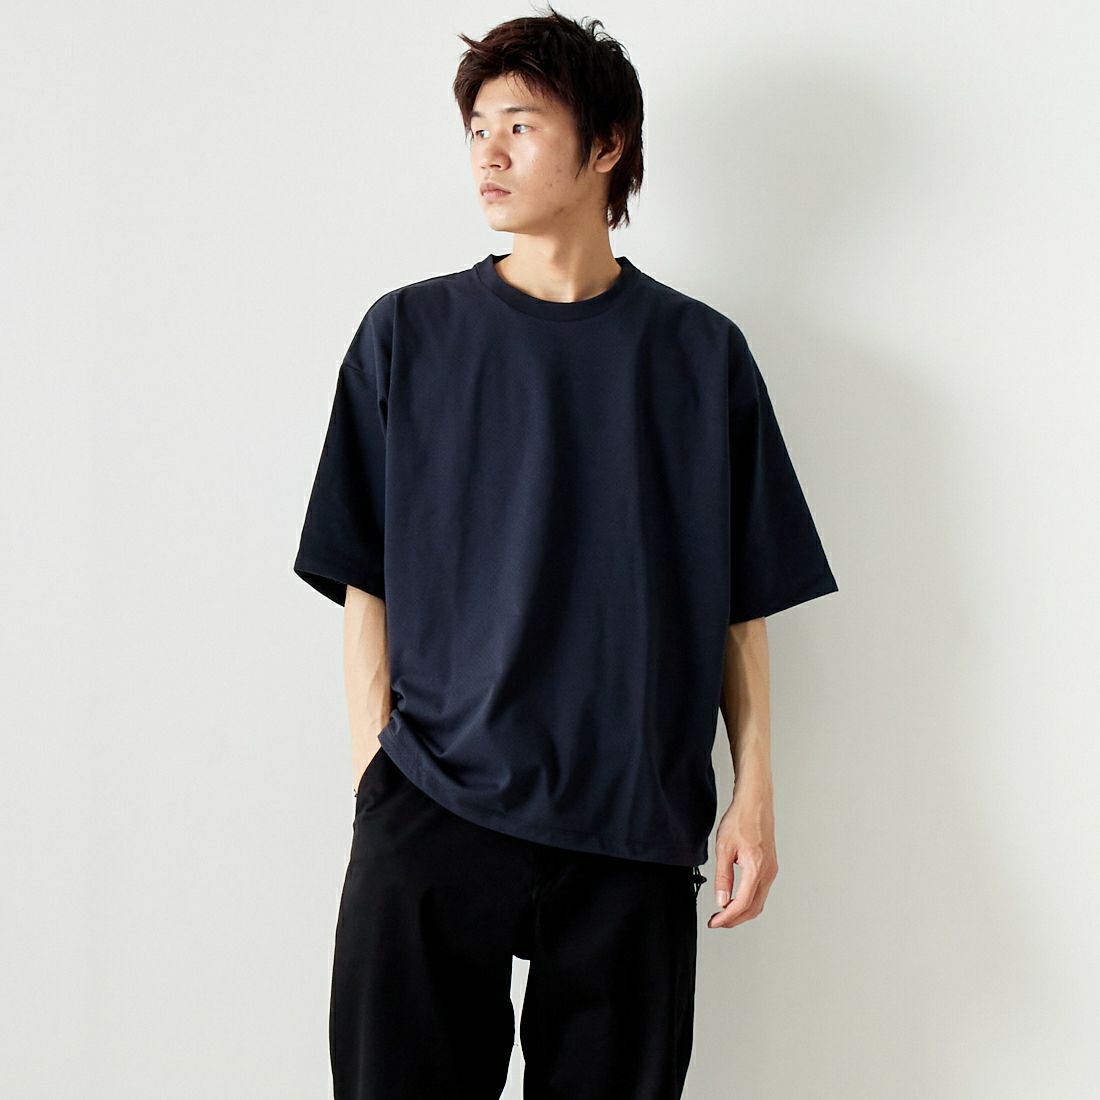 Jeans Factory Clothes [ジーンズファクトリークローズ] ドットエアリードローコードTシャツ [JFC-242-016]